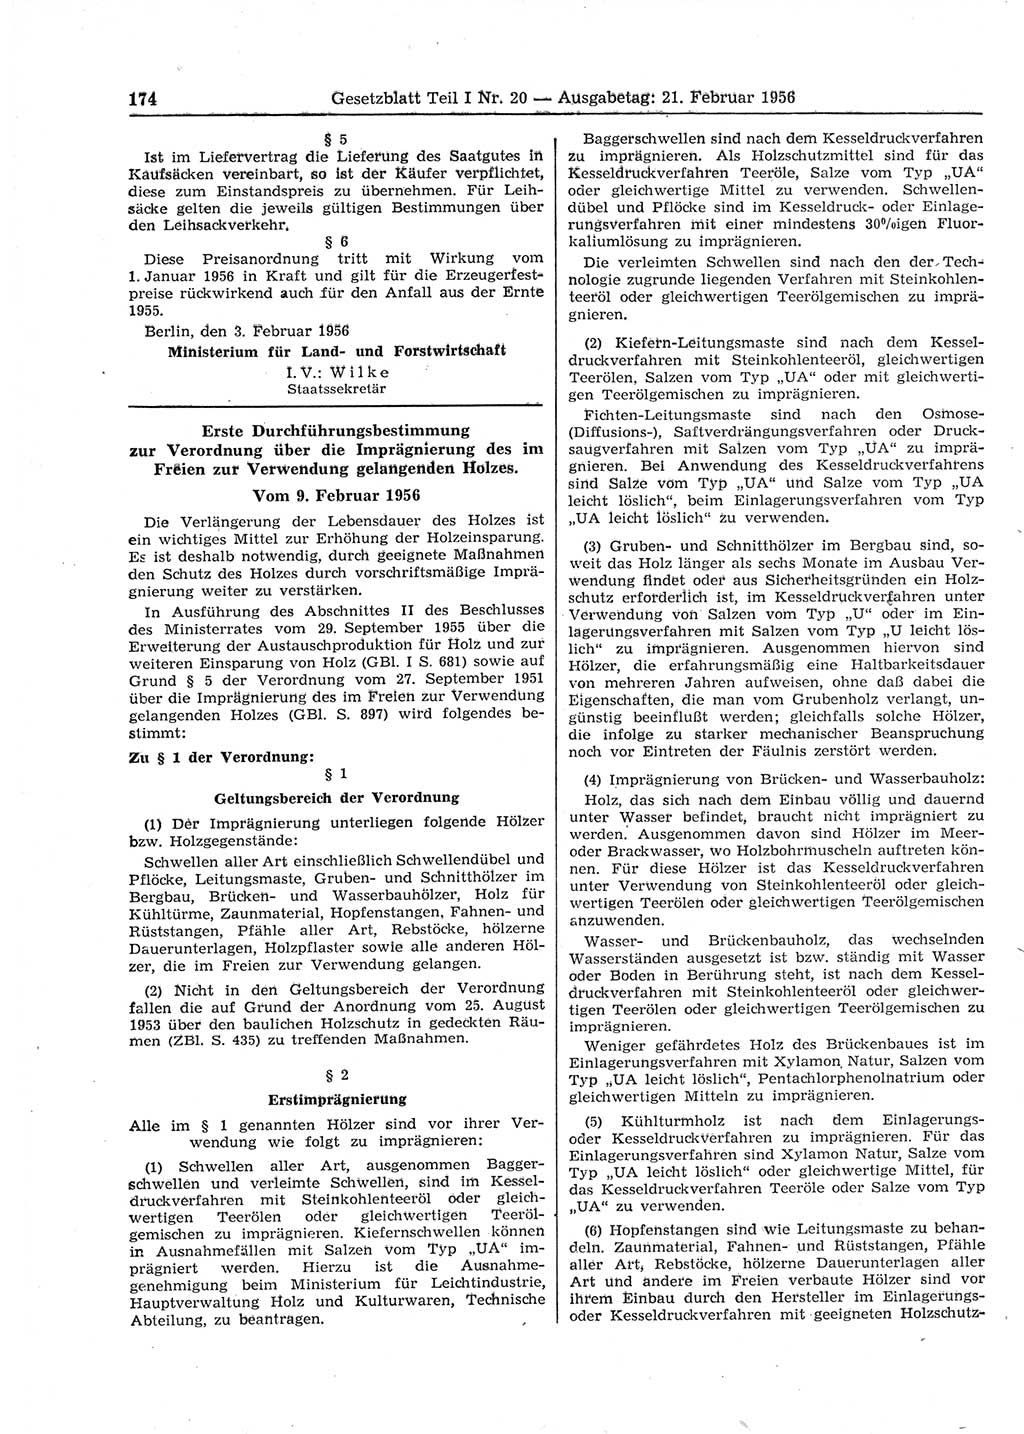 Gesetzblatt (GBl.) der Deutschen Demokratischen Republik (DDR) Teil Ⅰ 1956, Seite 174 (GBl. DDR Ⅰ 1956, S. 174)